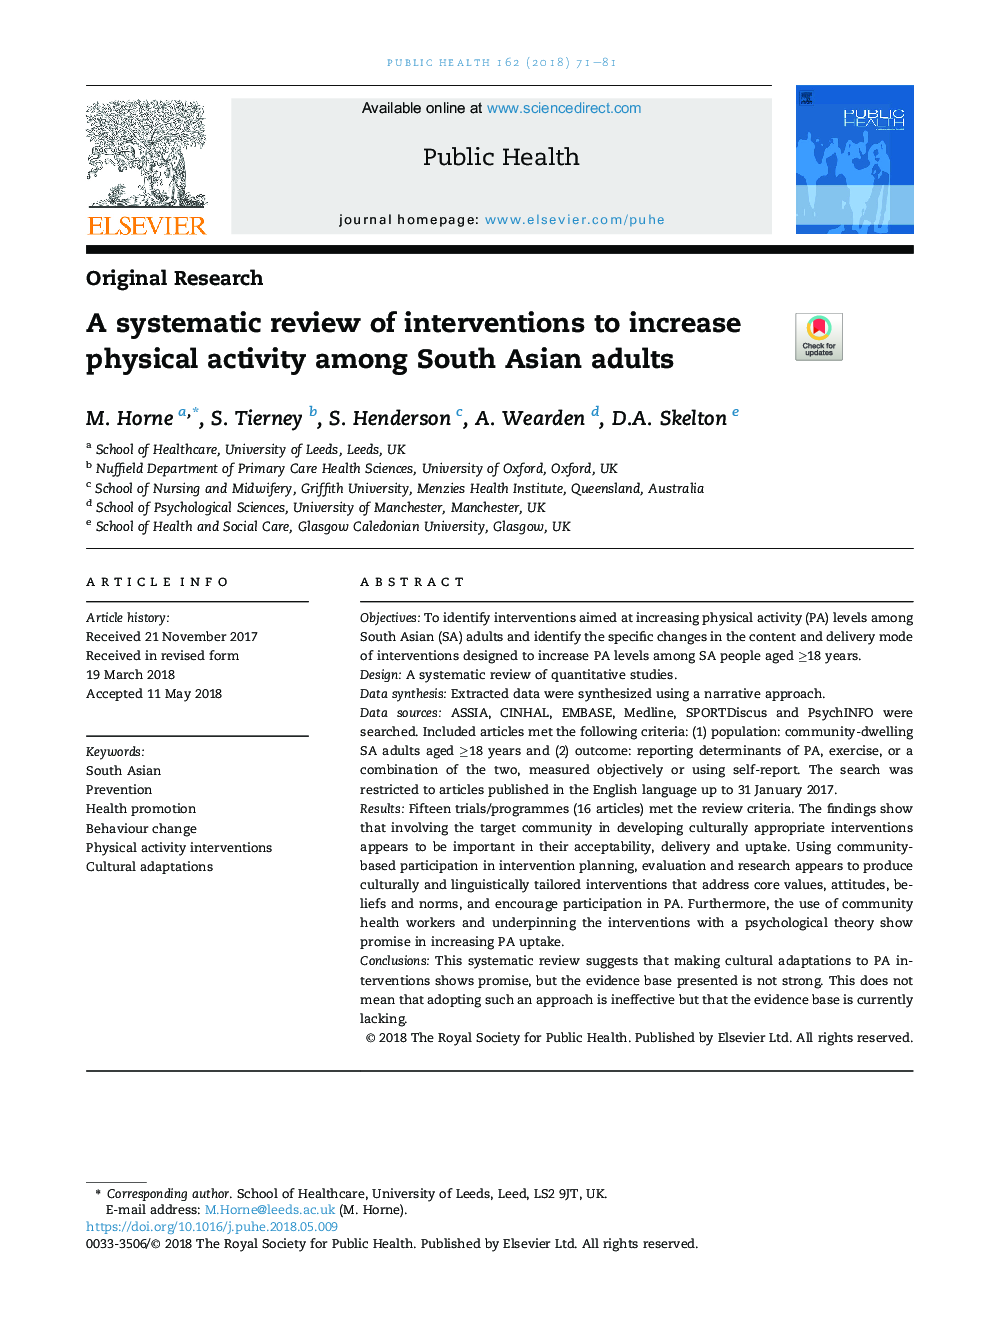 بررسی سیستماتیک مداخلات برای افزایش فعالیت بدنی در میان بزرگسالان آسیای جنوبی 